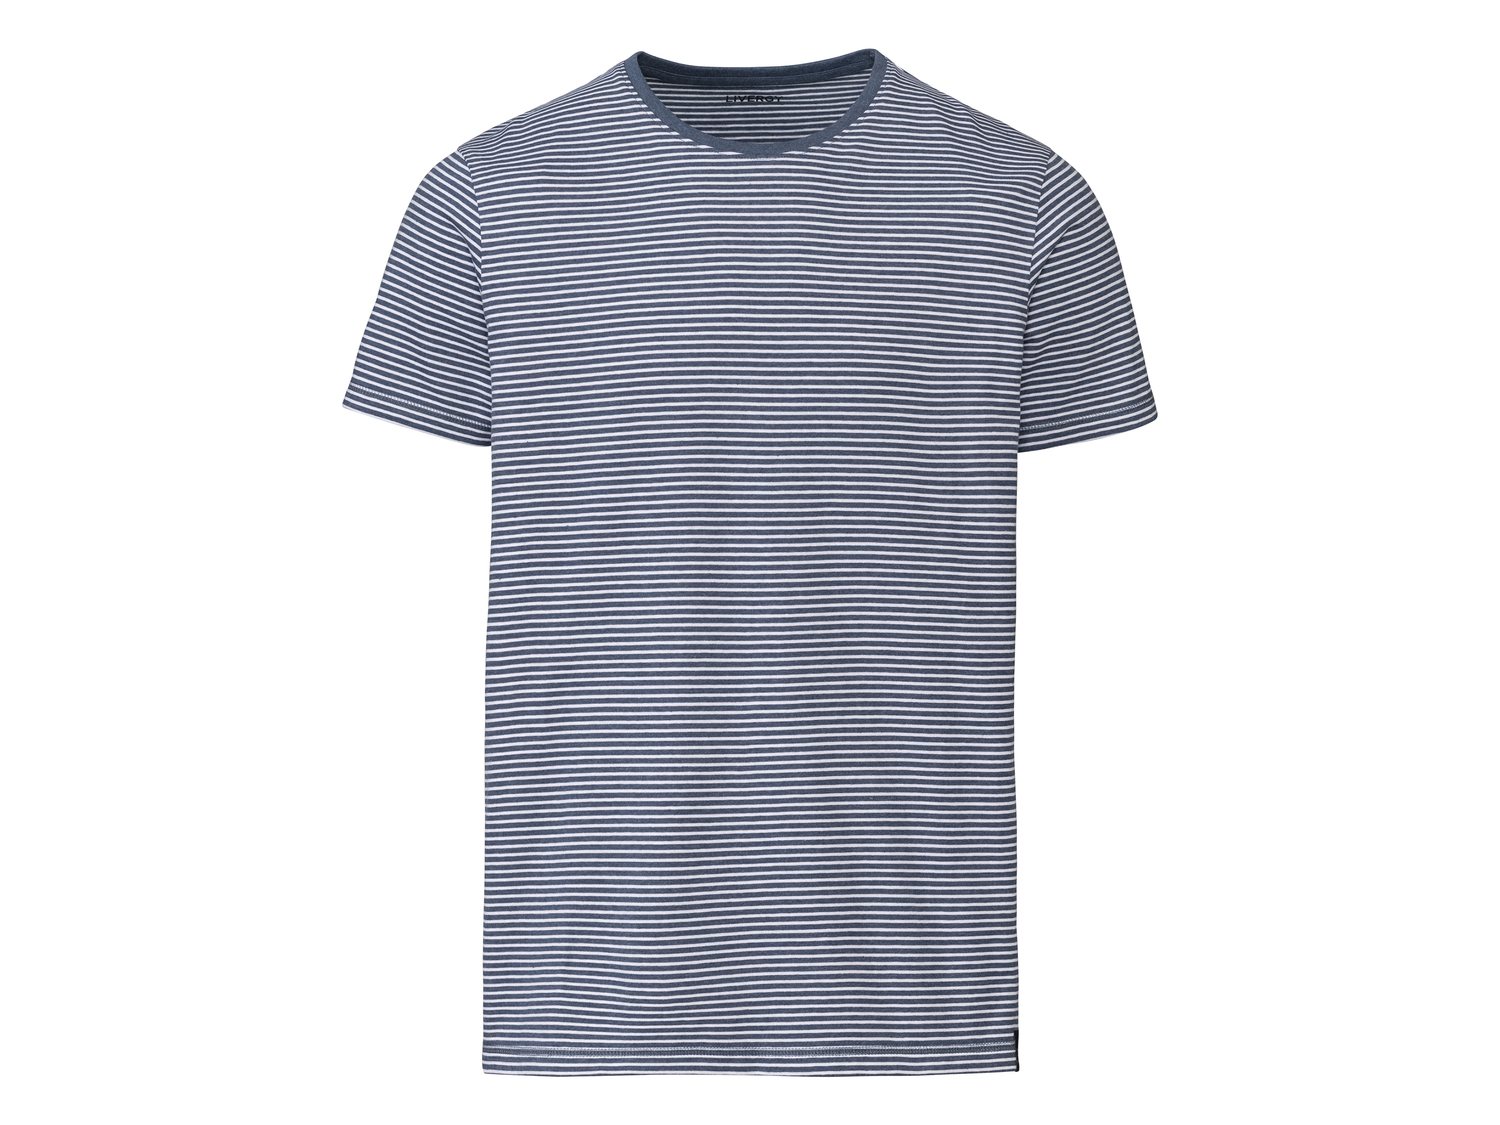 T-shirt da uomo Livergy, prezzo 4.99 € 
Misure: S-XL
Taglie disponibili

Caratteristiche ...